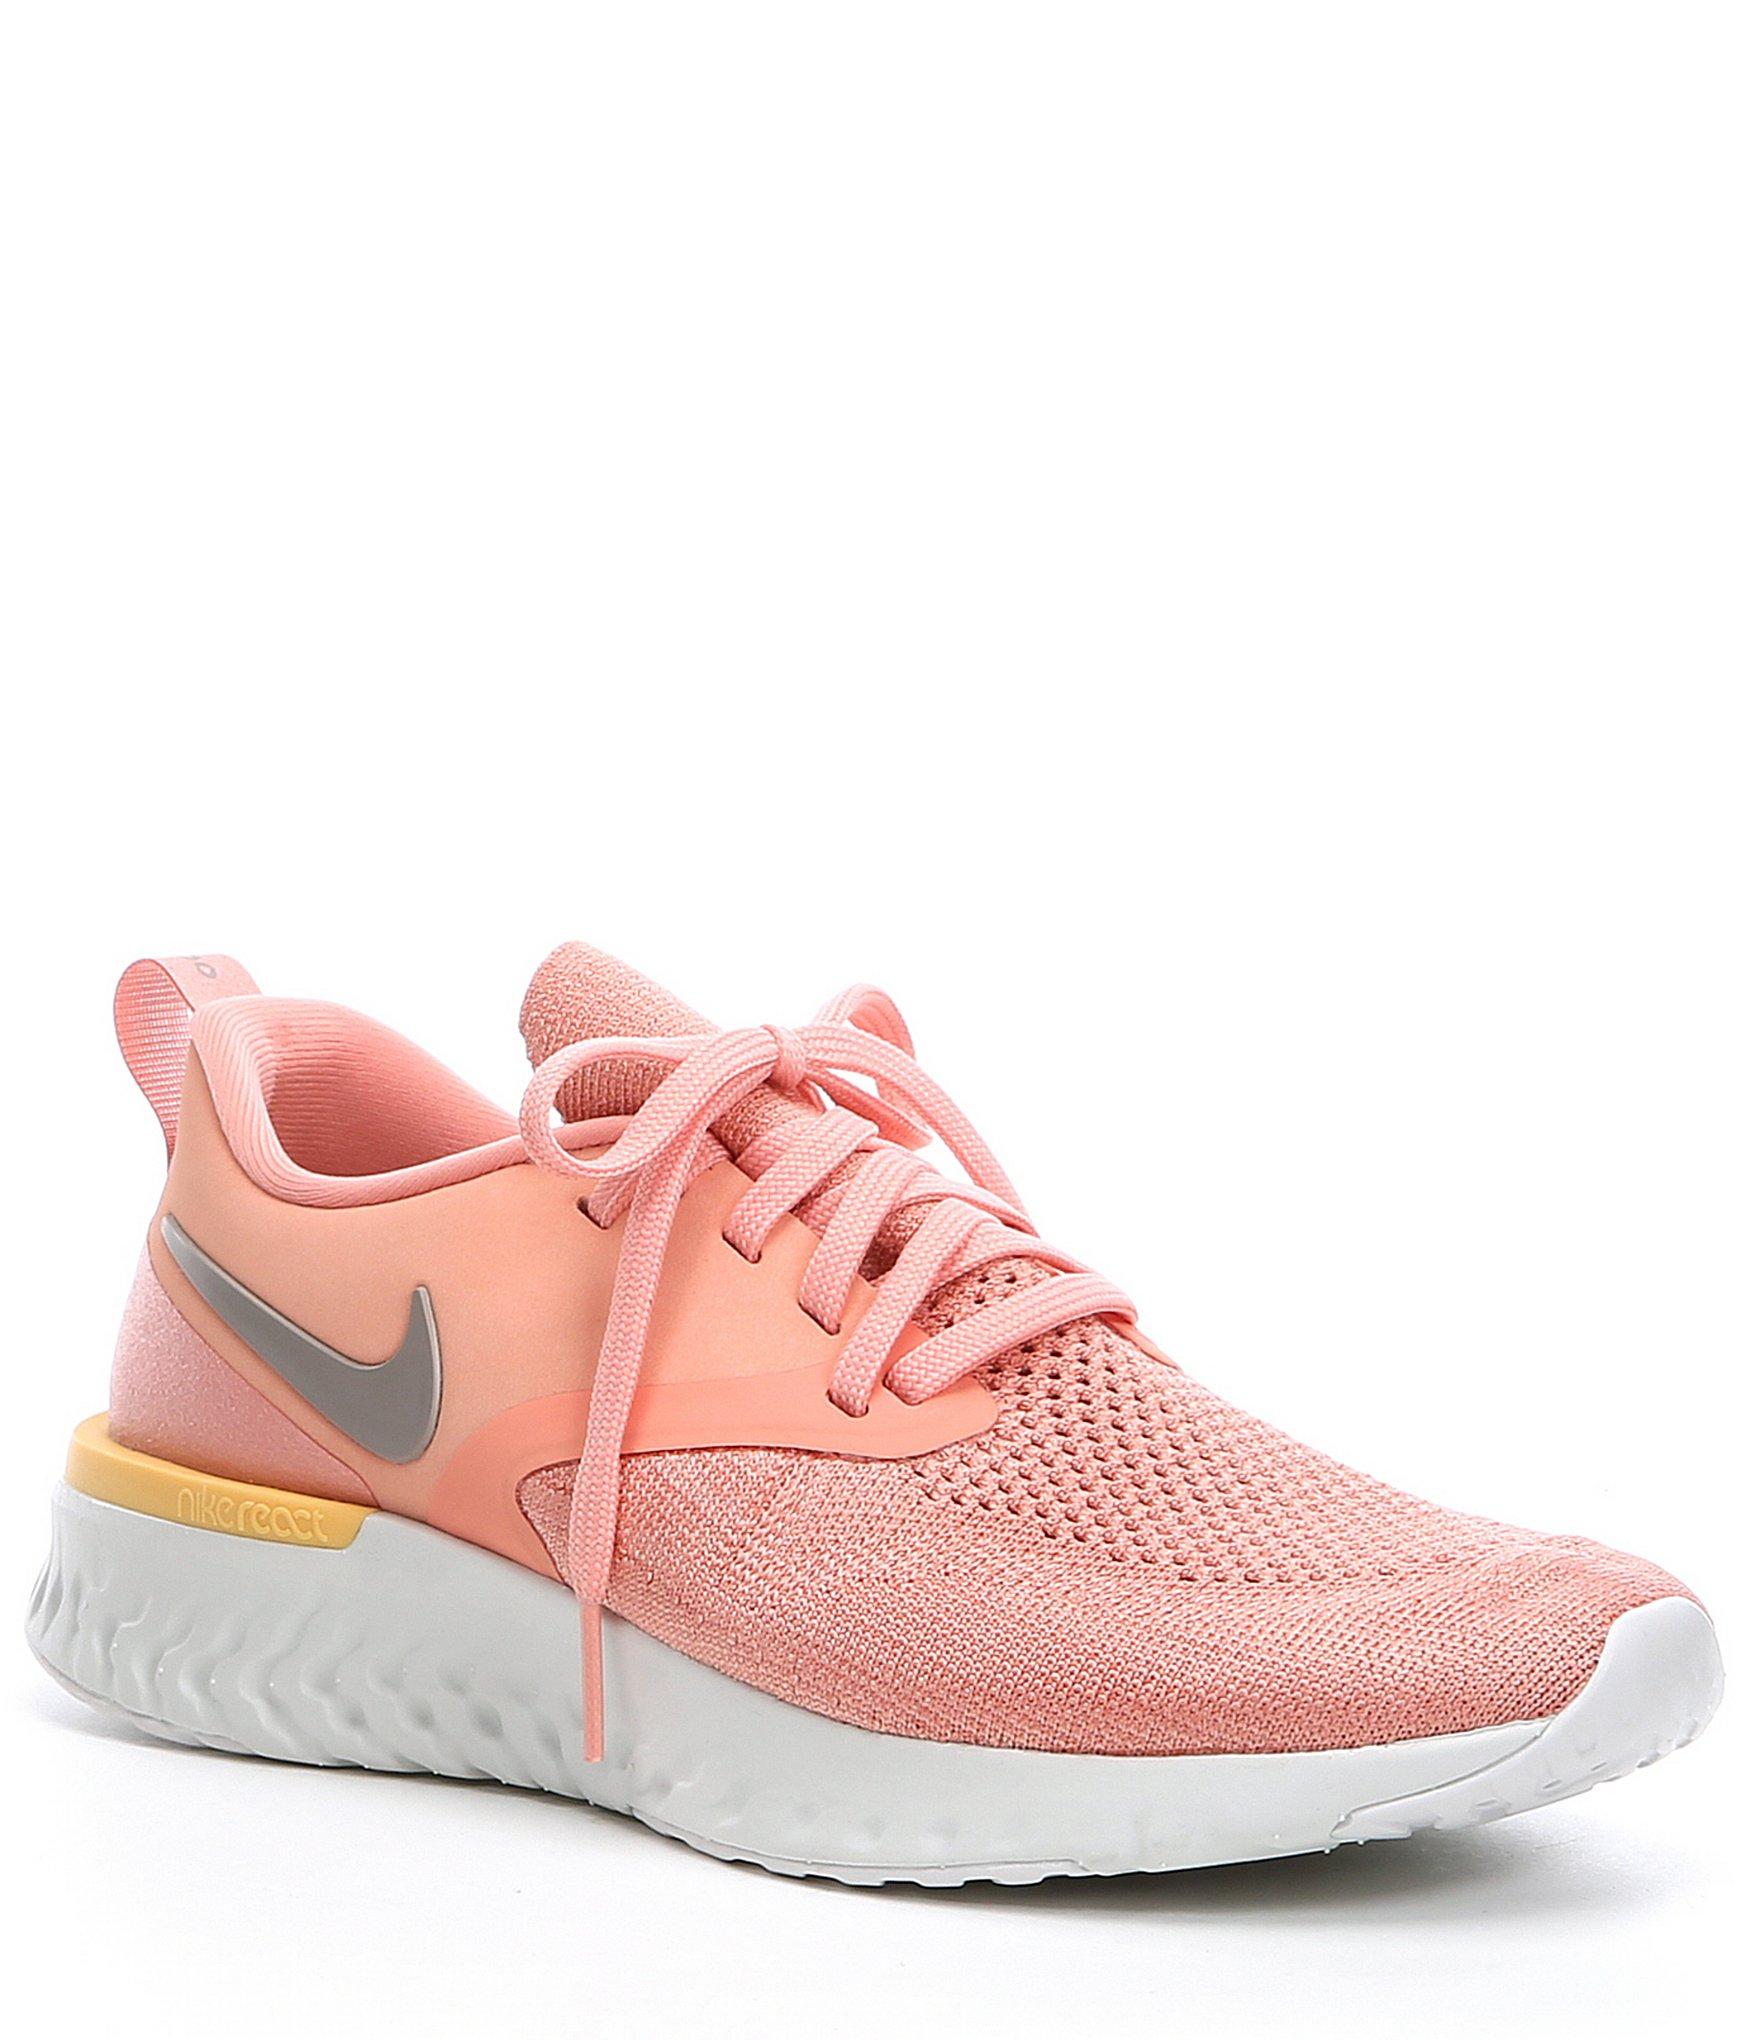 Nike Odyssey React Flyknit 2 in Pink - Lyst